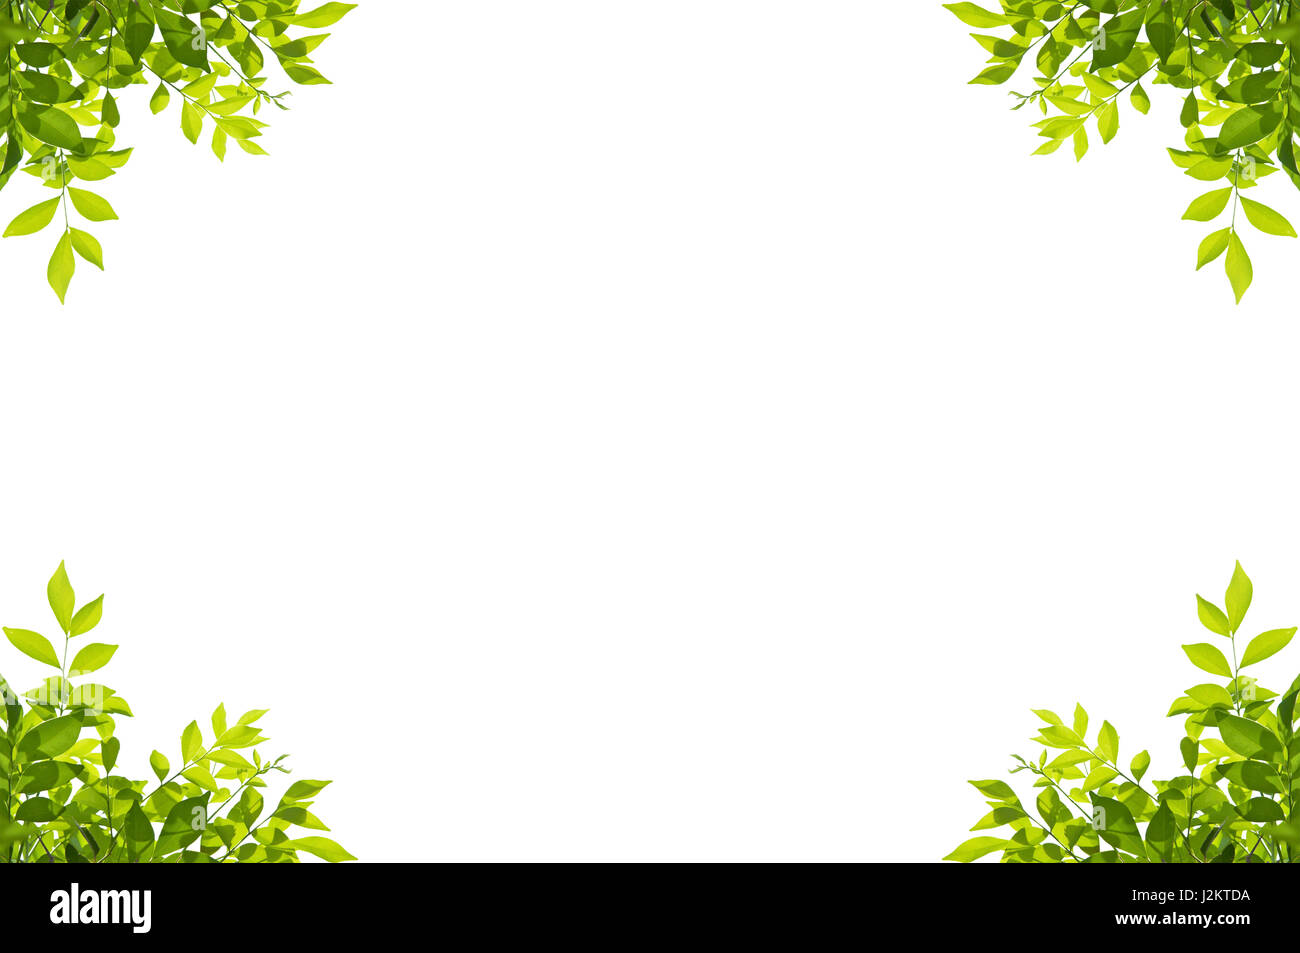 Cadre vert feuilles isolé sur fond blanc Banque D'Images